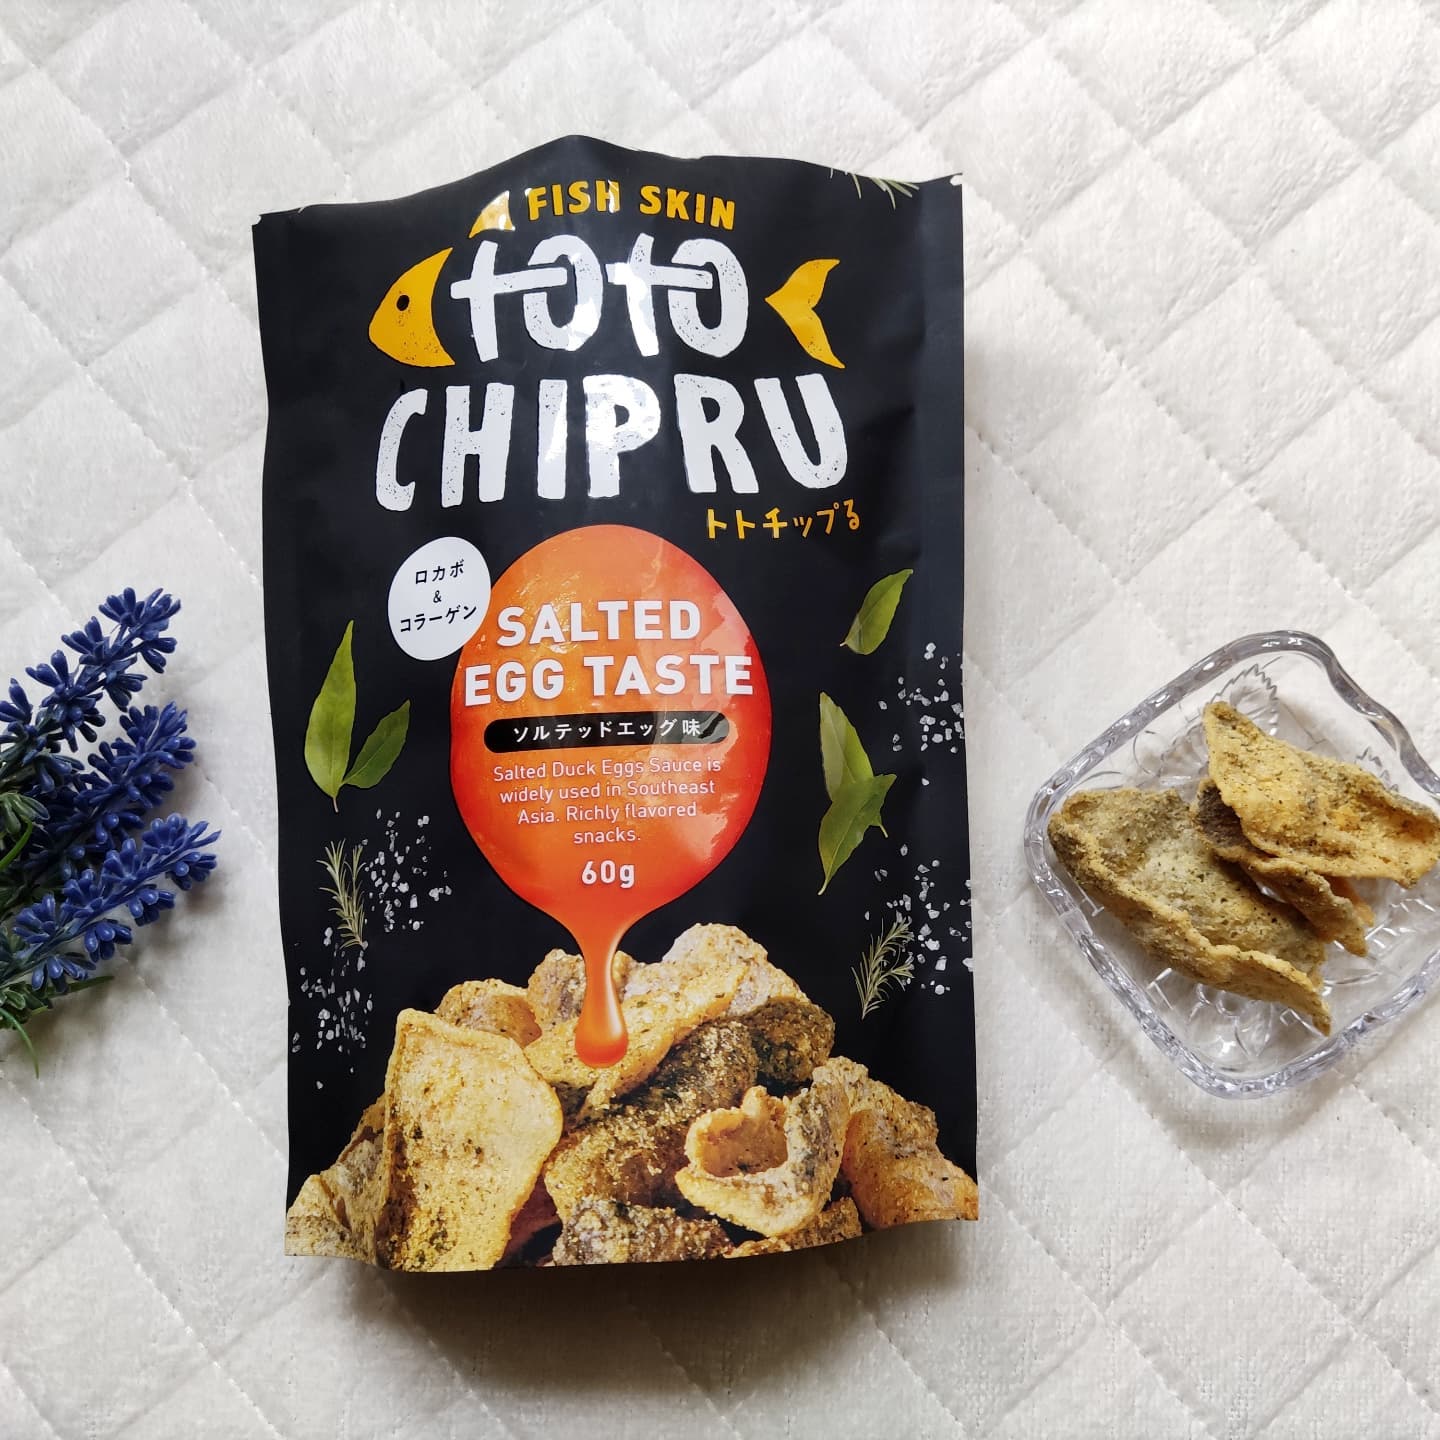 口コミ投稿：日本初上陸！『トトチップる』🐟@totochipru魚の皮で作った珍しいチップス「トトチッ…